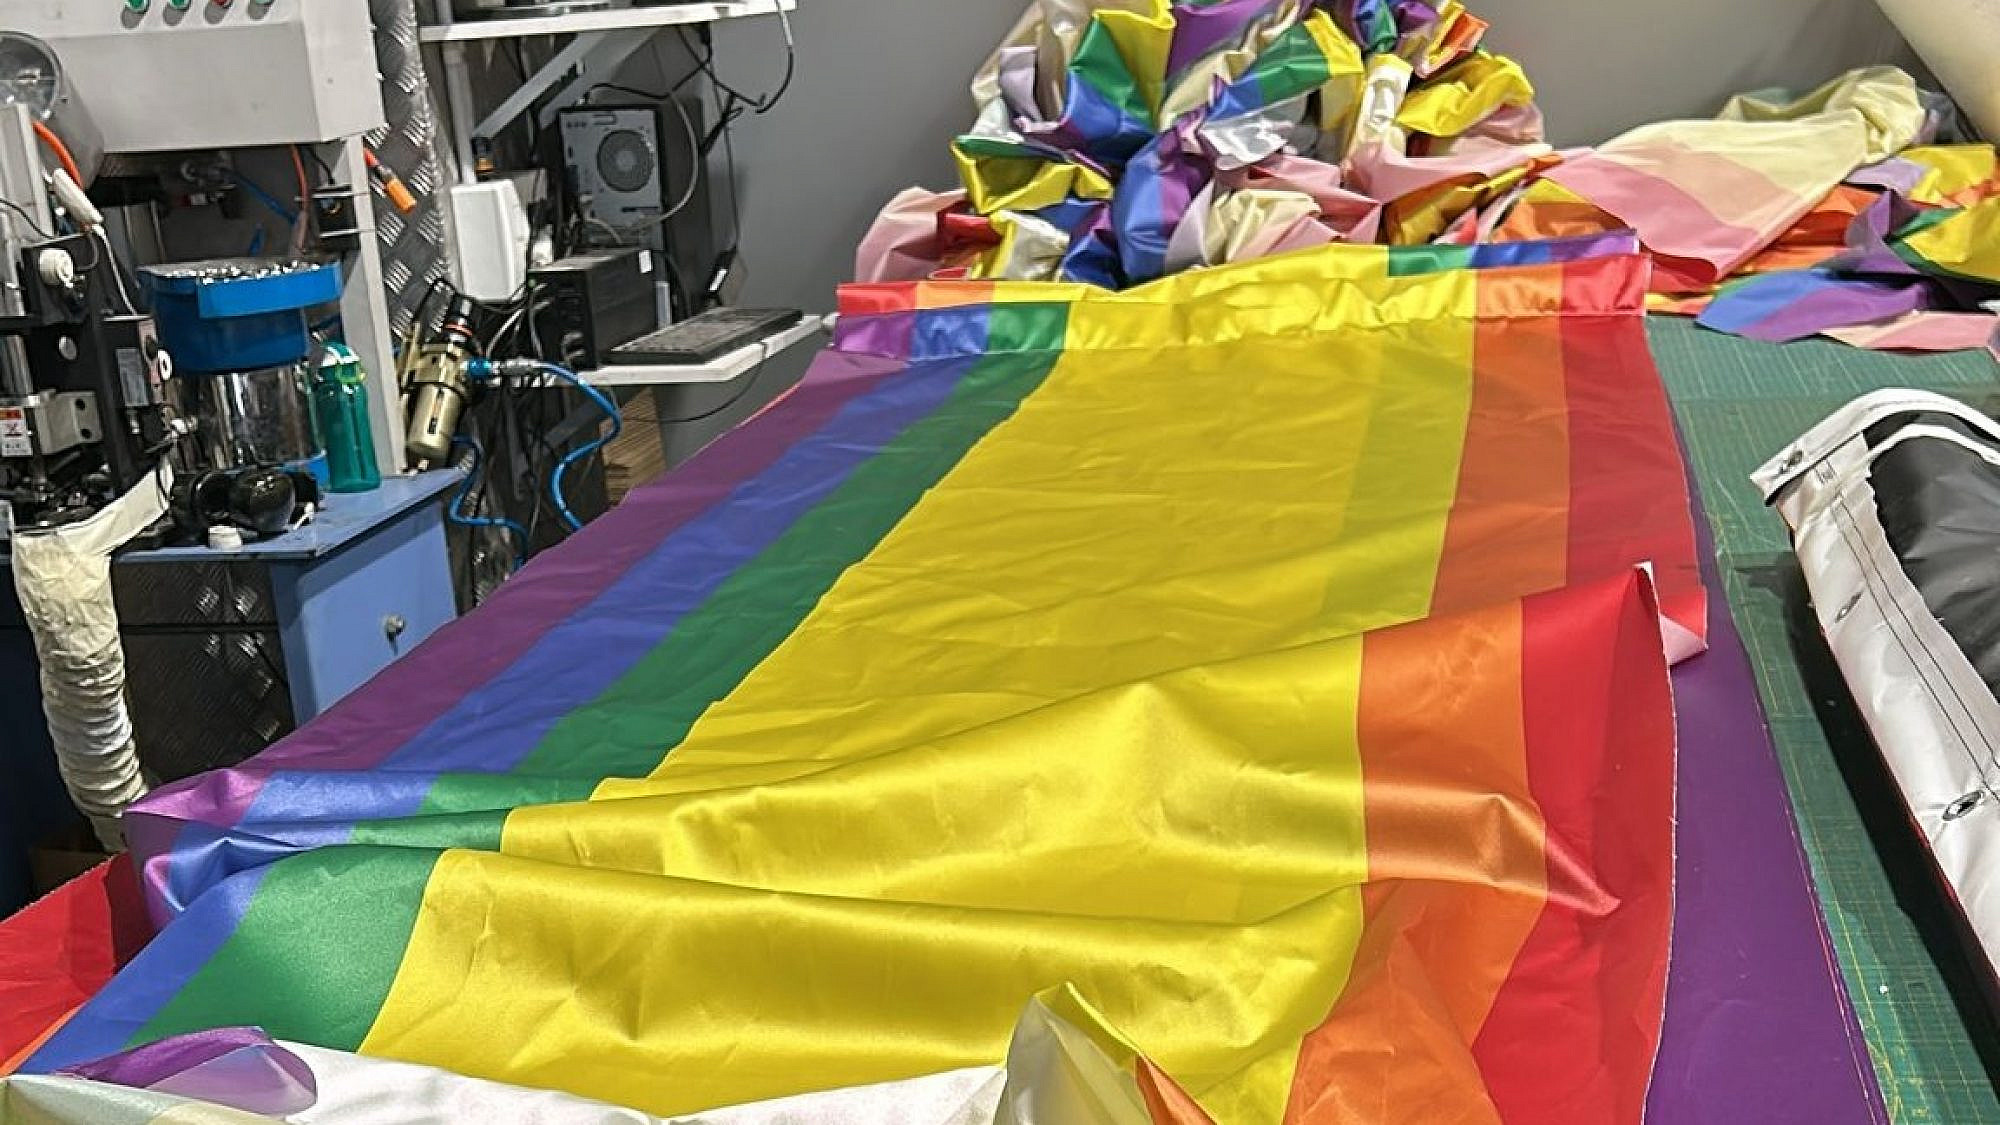 חם ממכונת הדפוס: דגל הגאווה והתקווה החדש (צילום: באדיבות עיריית תל אביב-יפו)